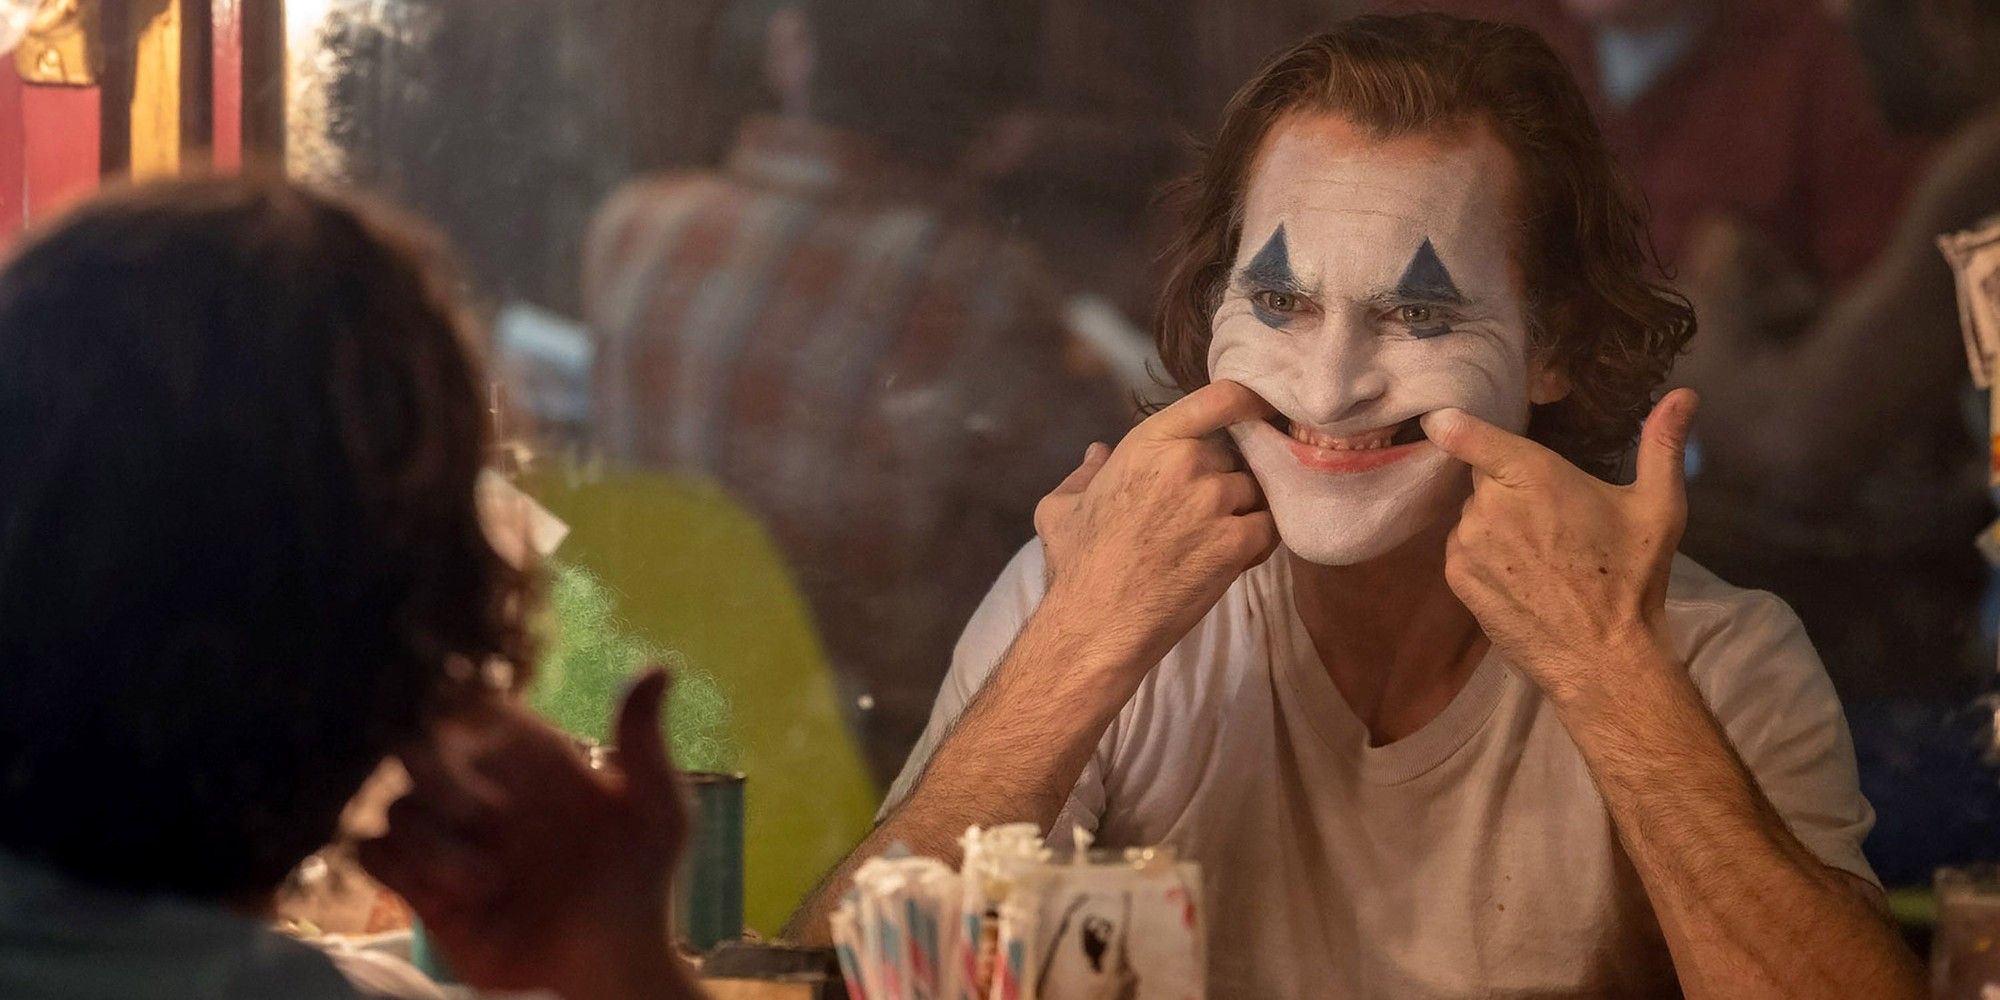 Joker Wins the Golden Lion at the 2019 Venice Film Festival